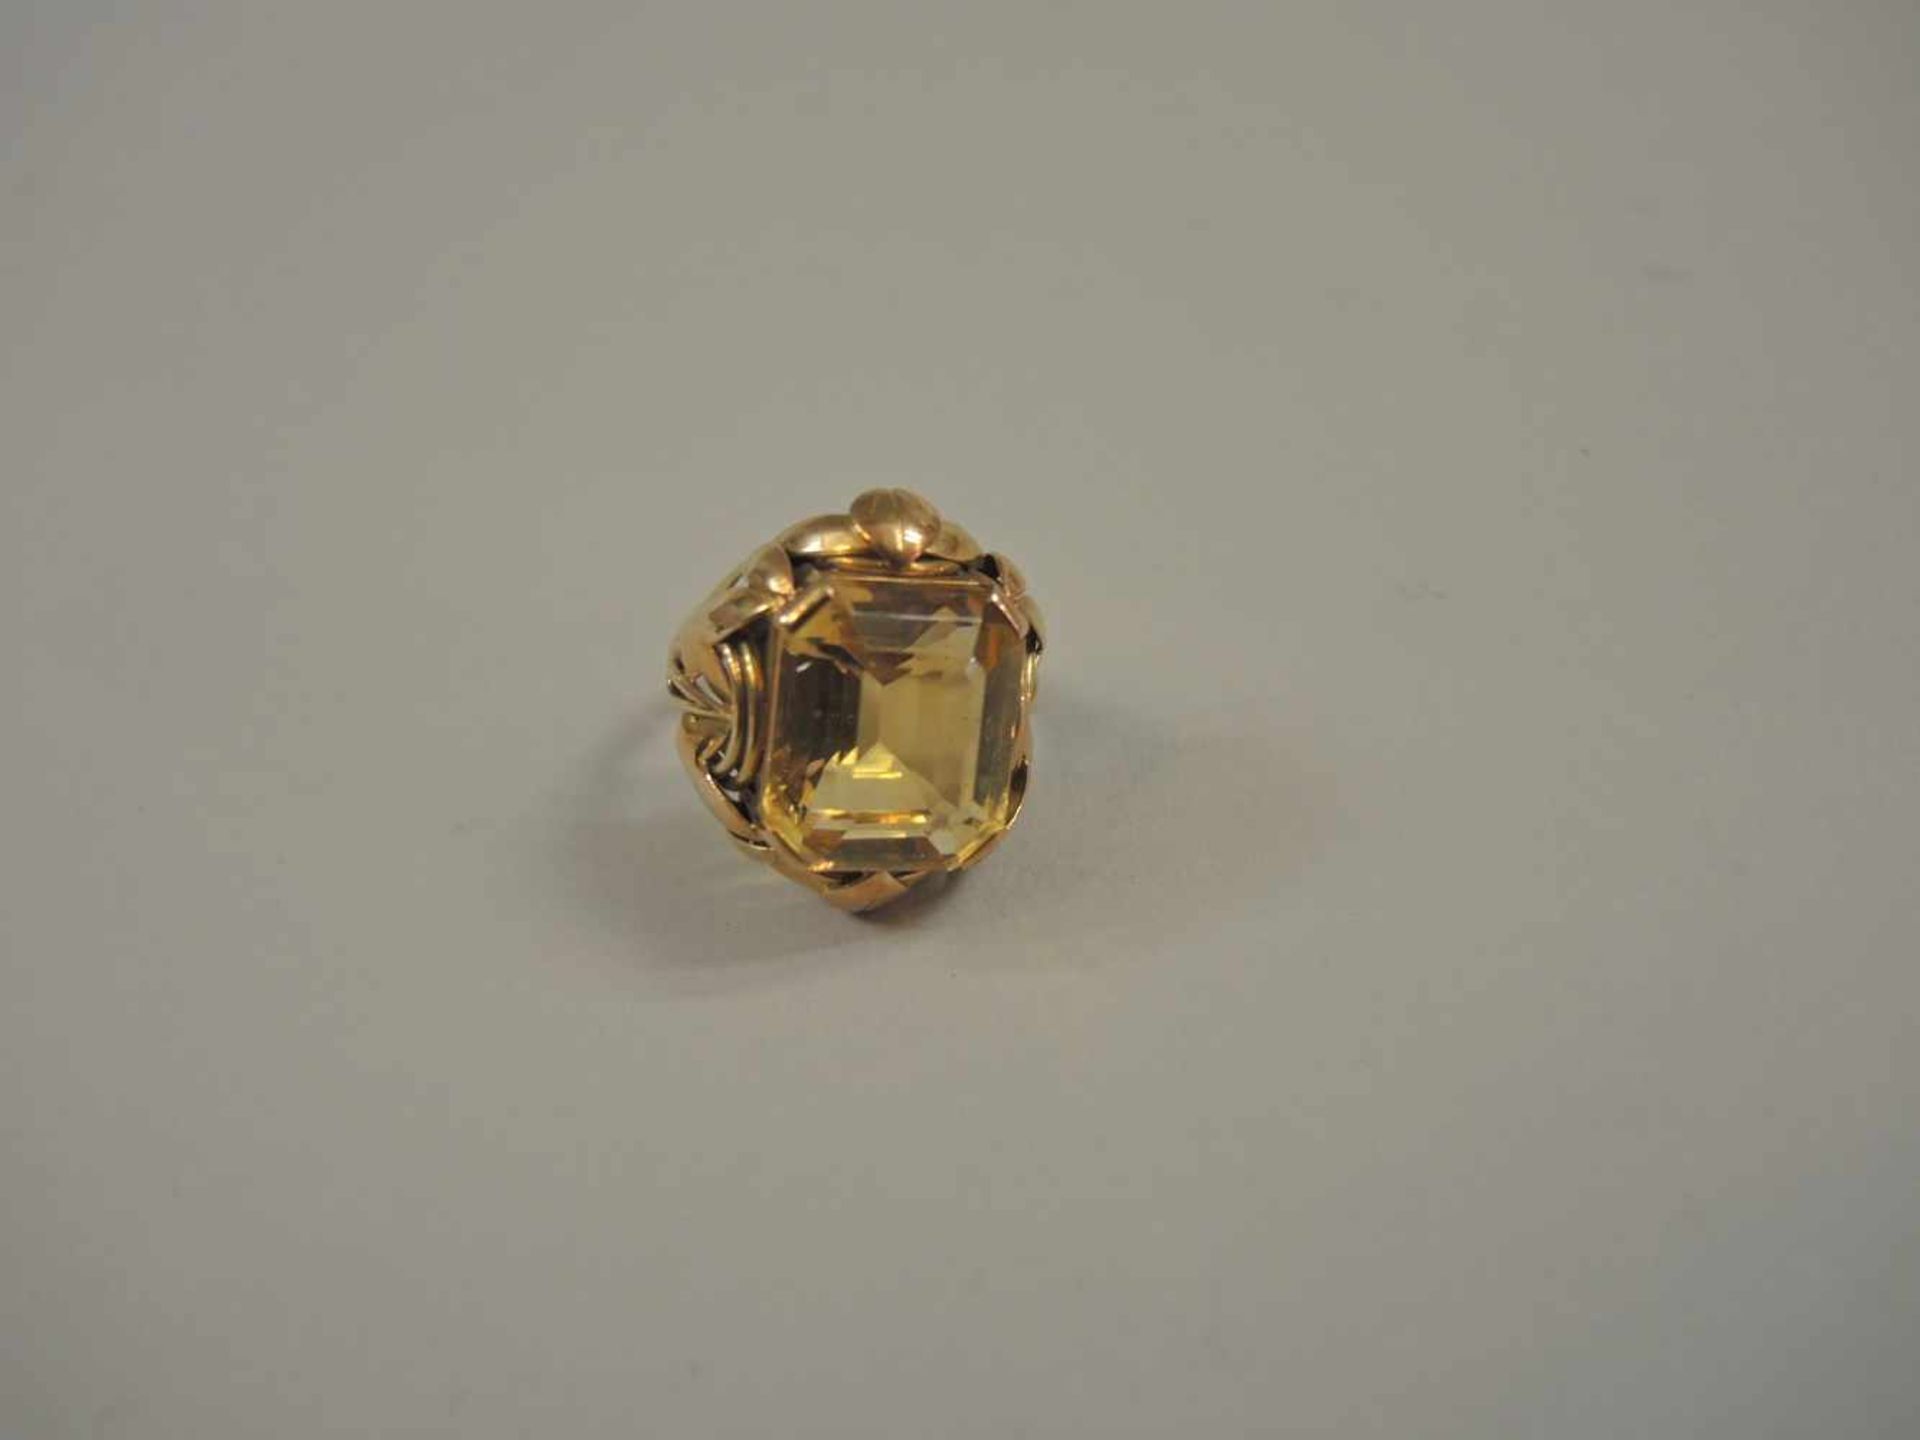 Farbstein-Ring 14 K. Gold, mit Citrin. 1940er- Jahre. Ringgröße 54. Gewicht 9,7 g - Bild 2 aus 2